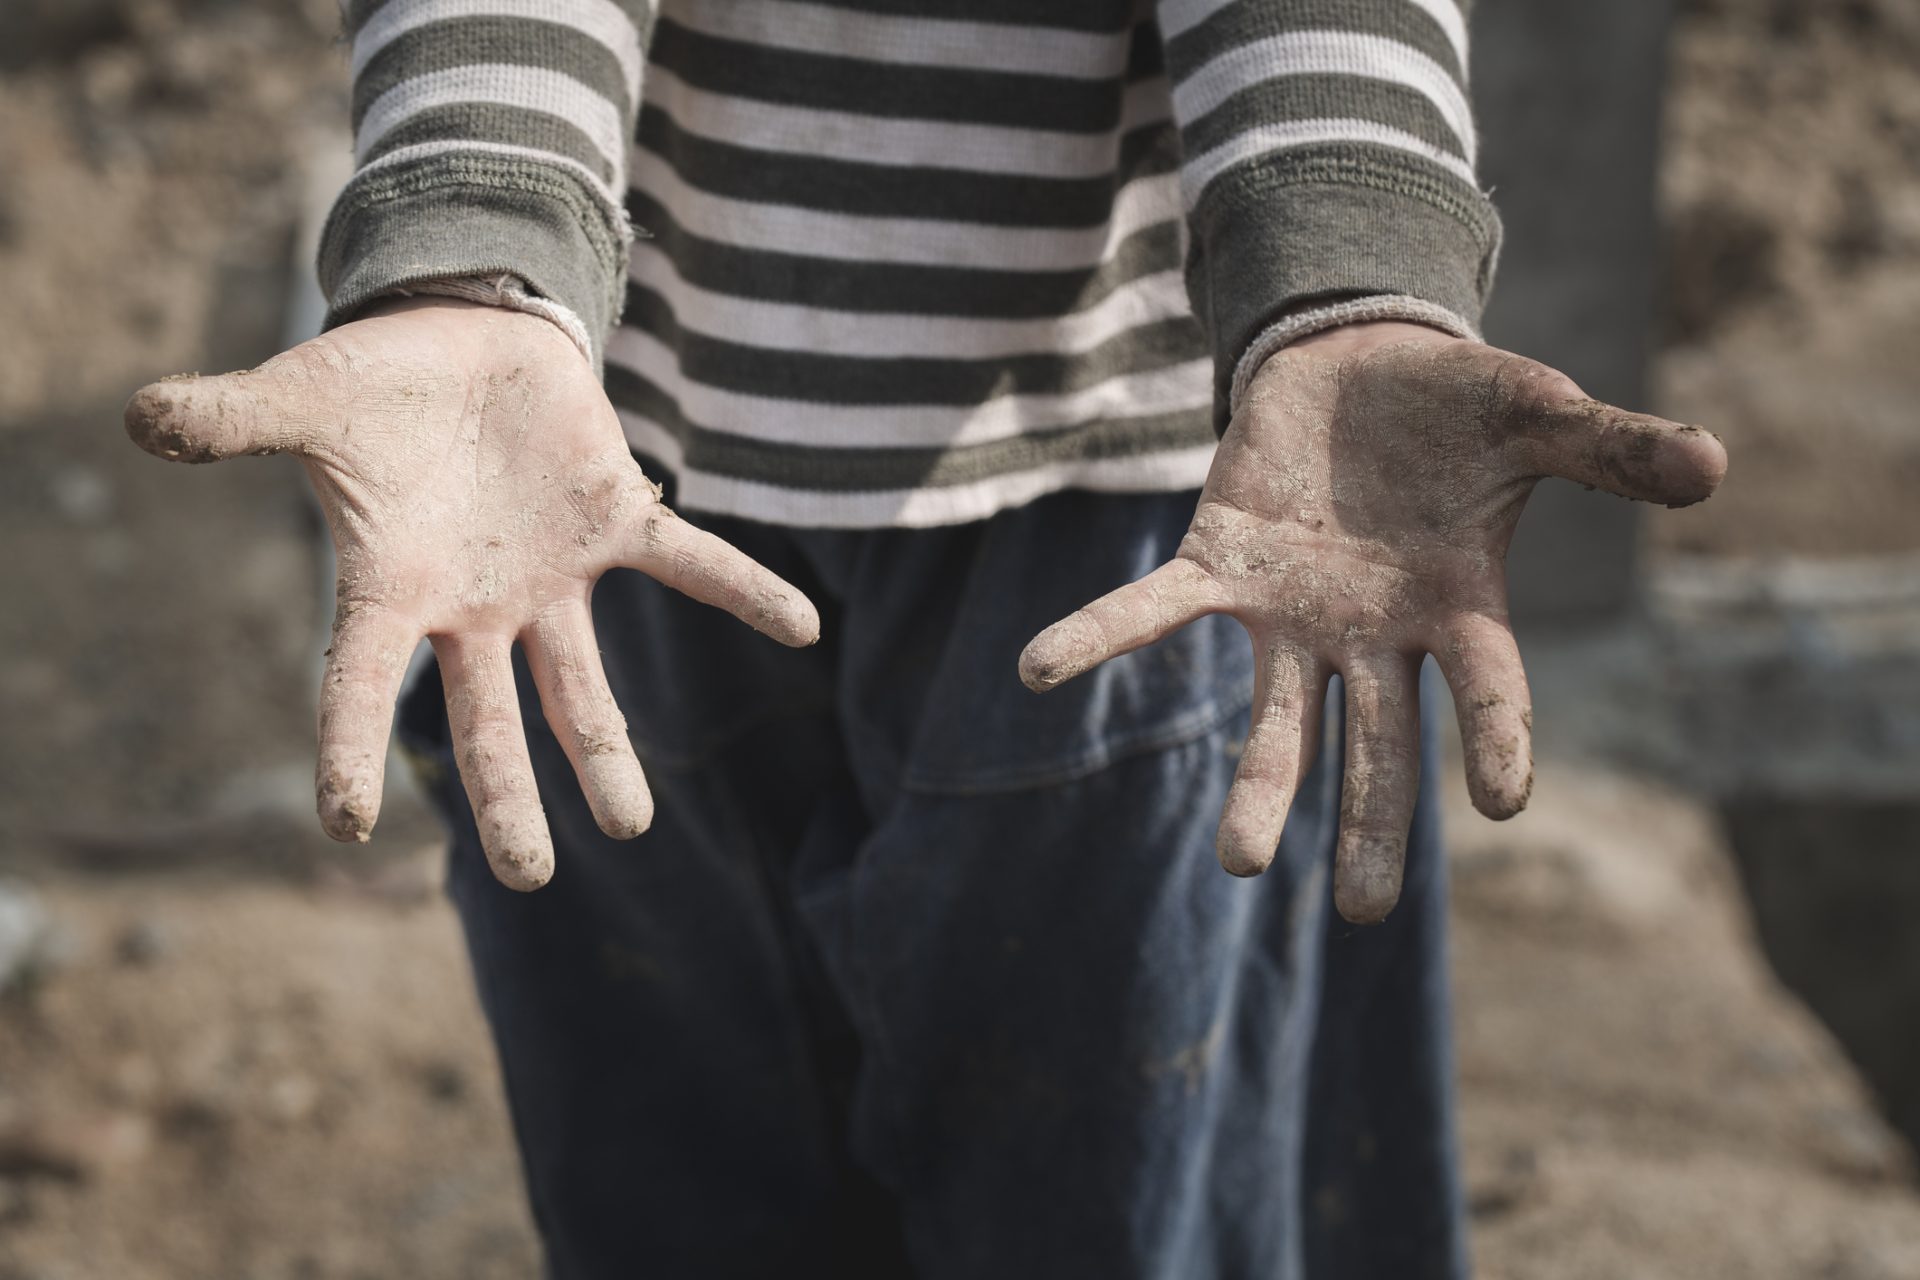 Pandemia aumentou trabalho infantil, alertam organizações